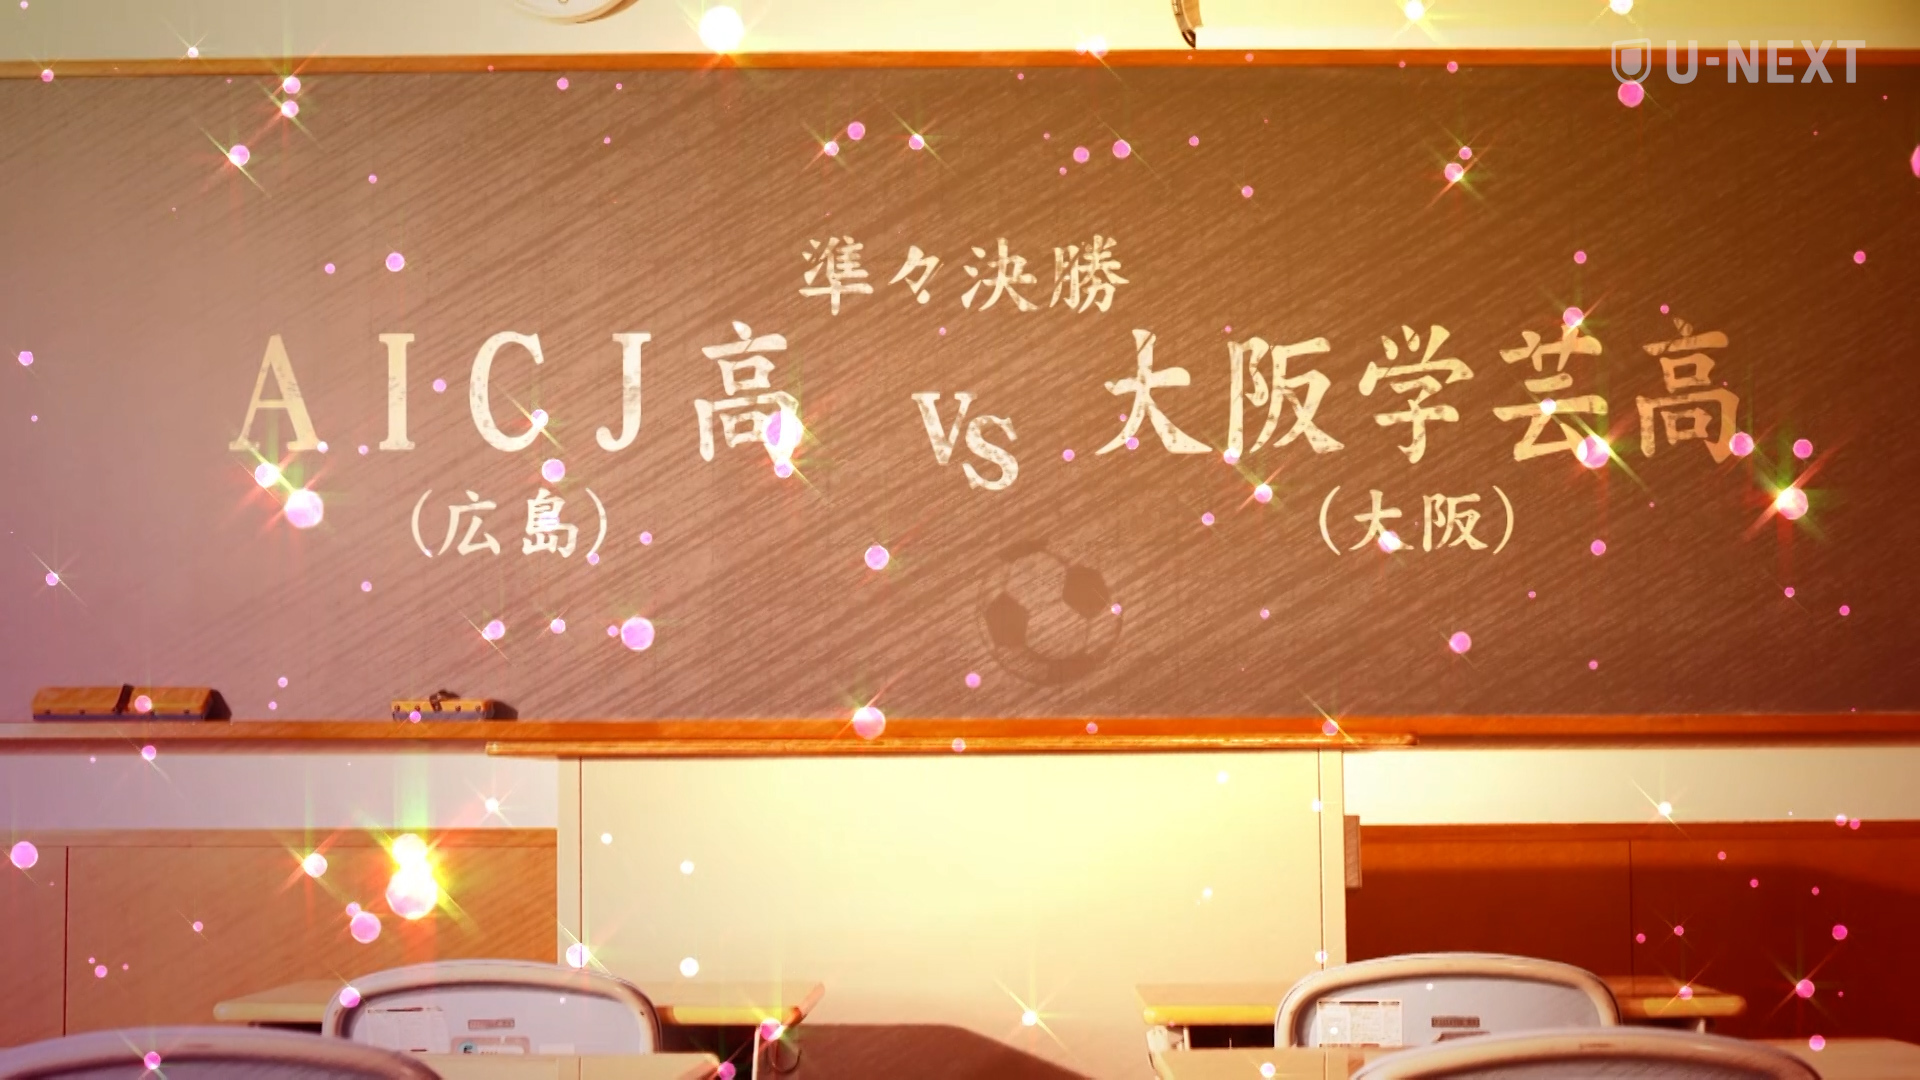 【高校女子サッカー 準々決勝ハイライト】AICJ vs 大阪学芸 後半の2得点でAICJとの激戦を制した大阪学芸が4大会ぶりのベスト4に進出！